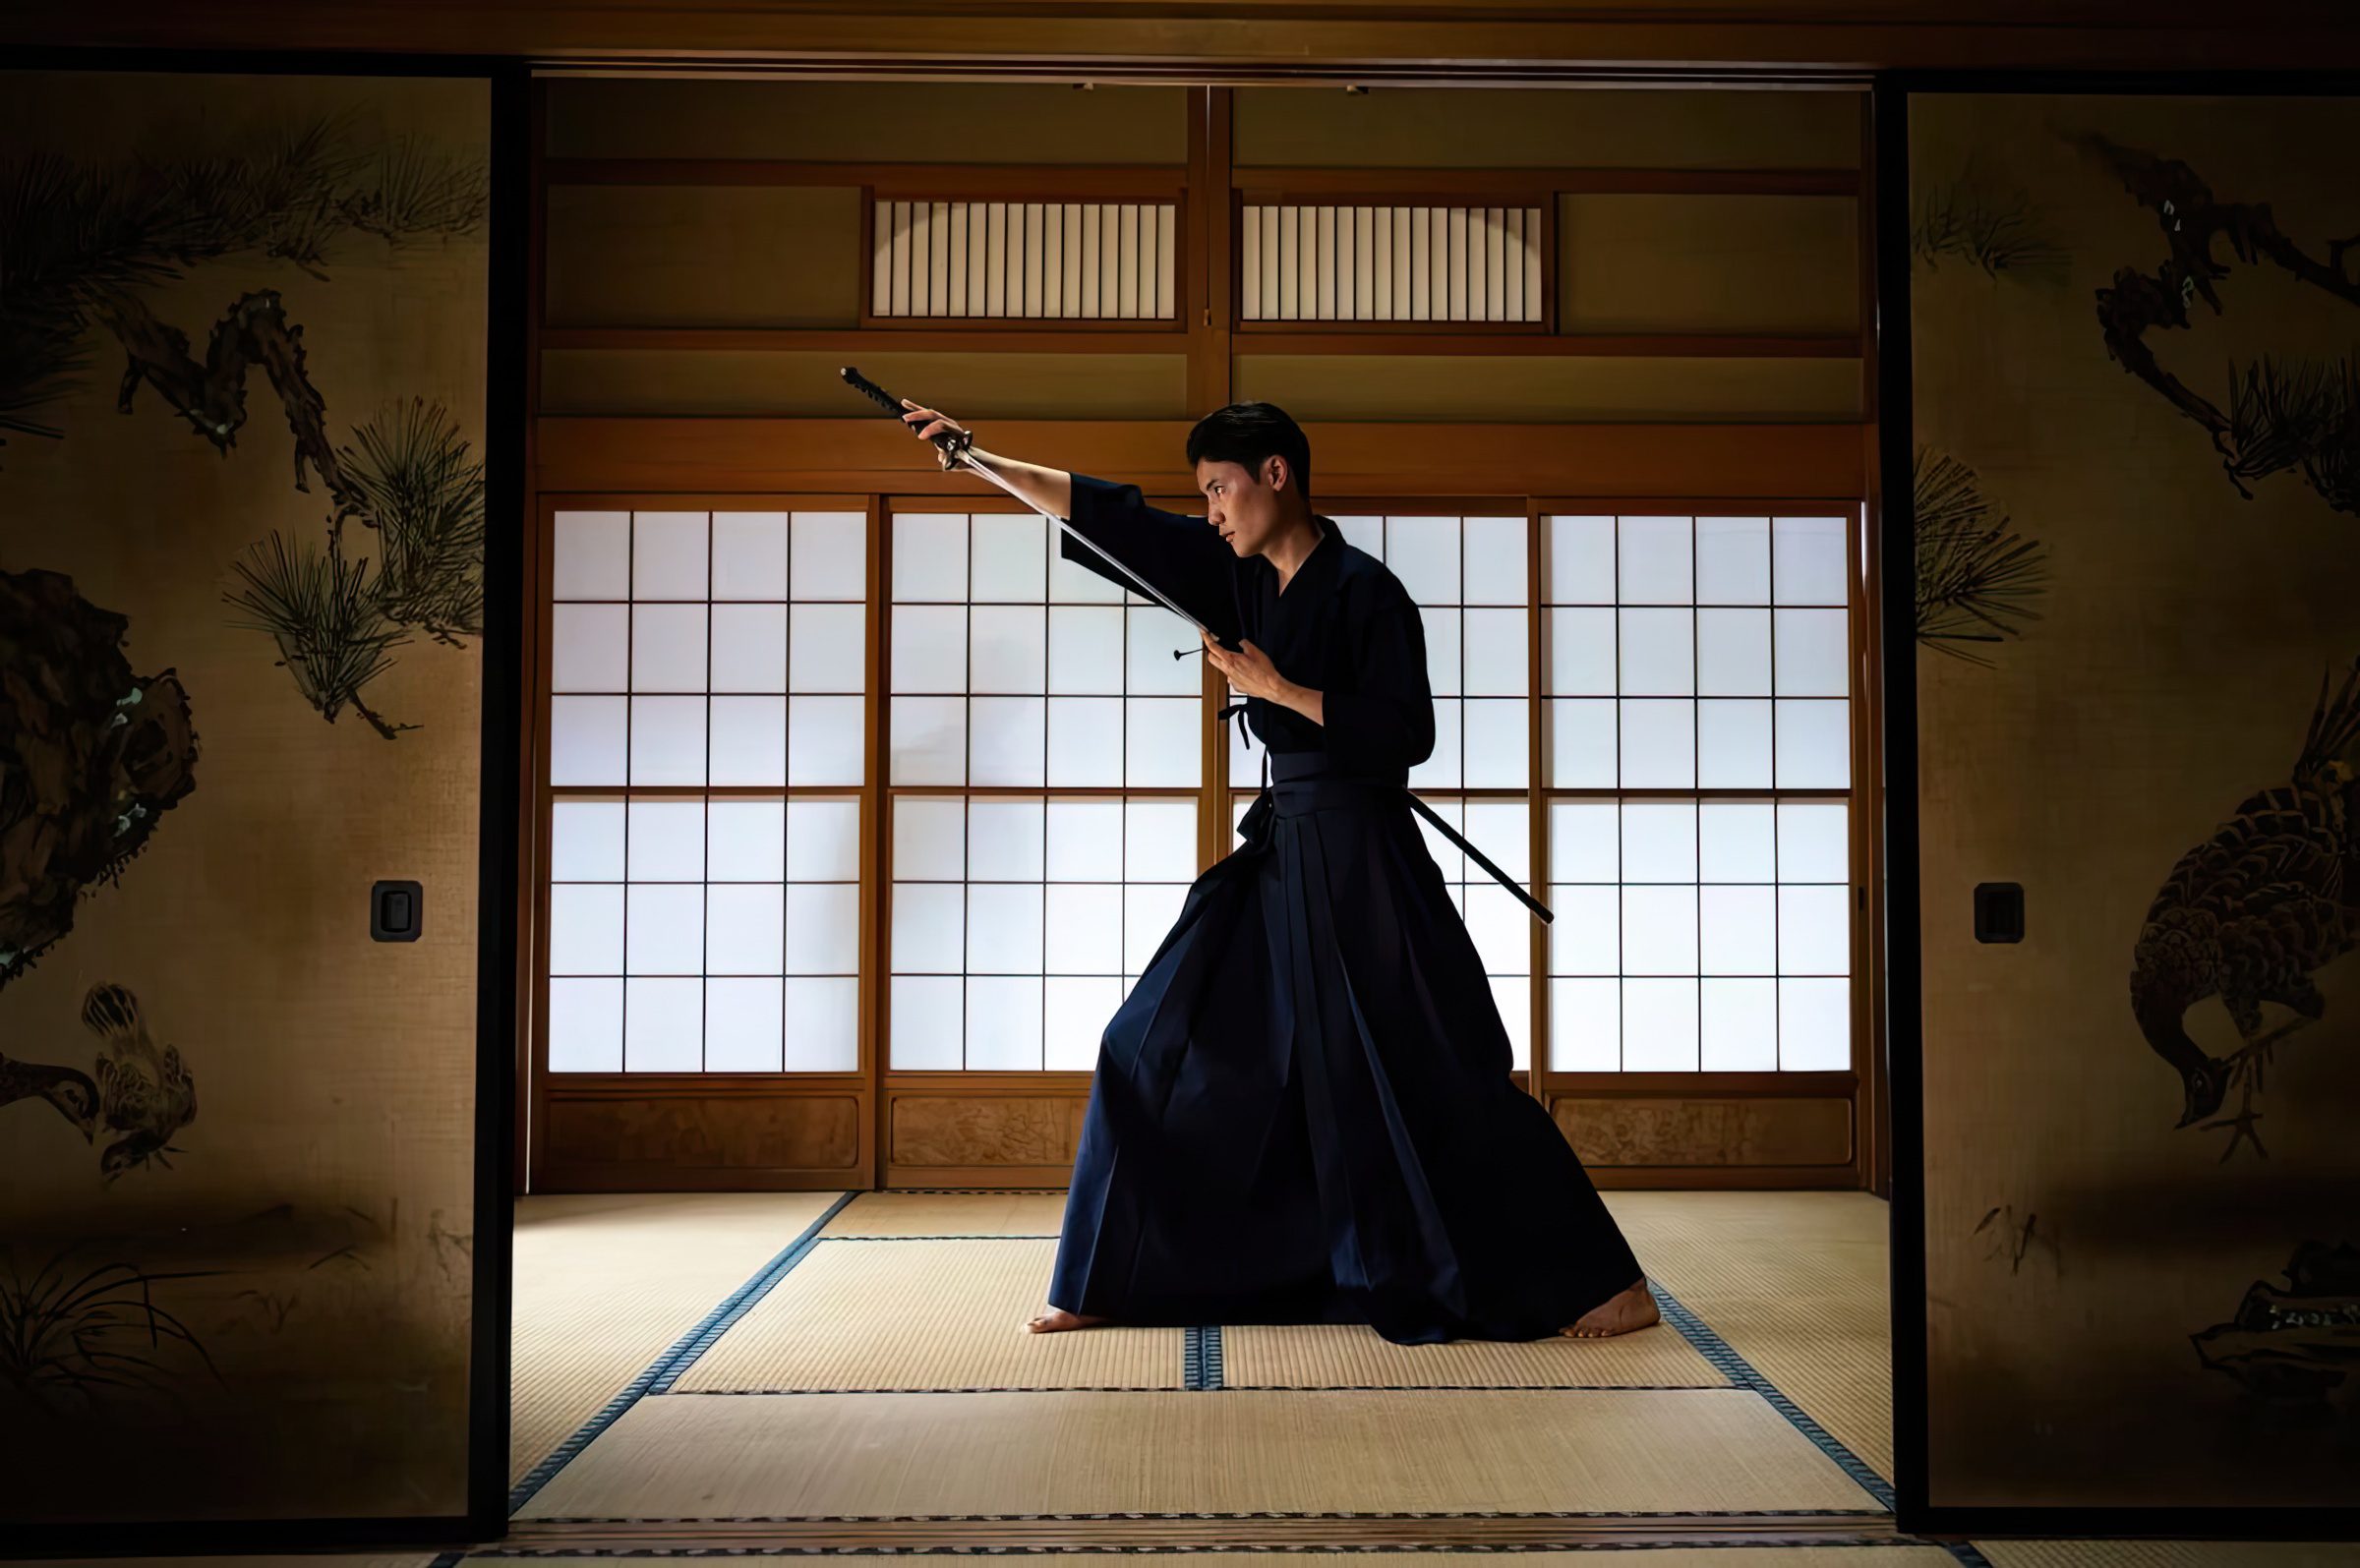 Beginners Guide: How To Use a Katana like a Real Samurai